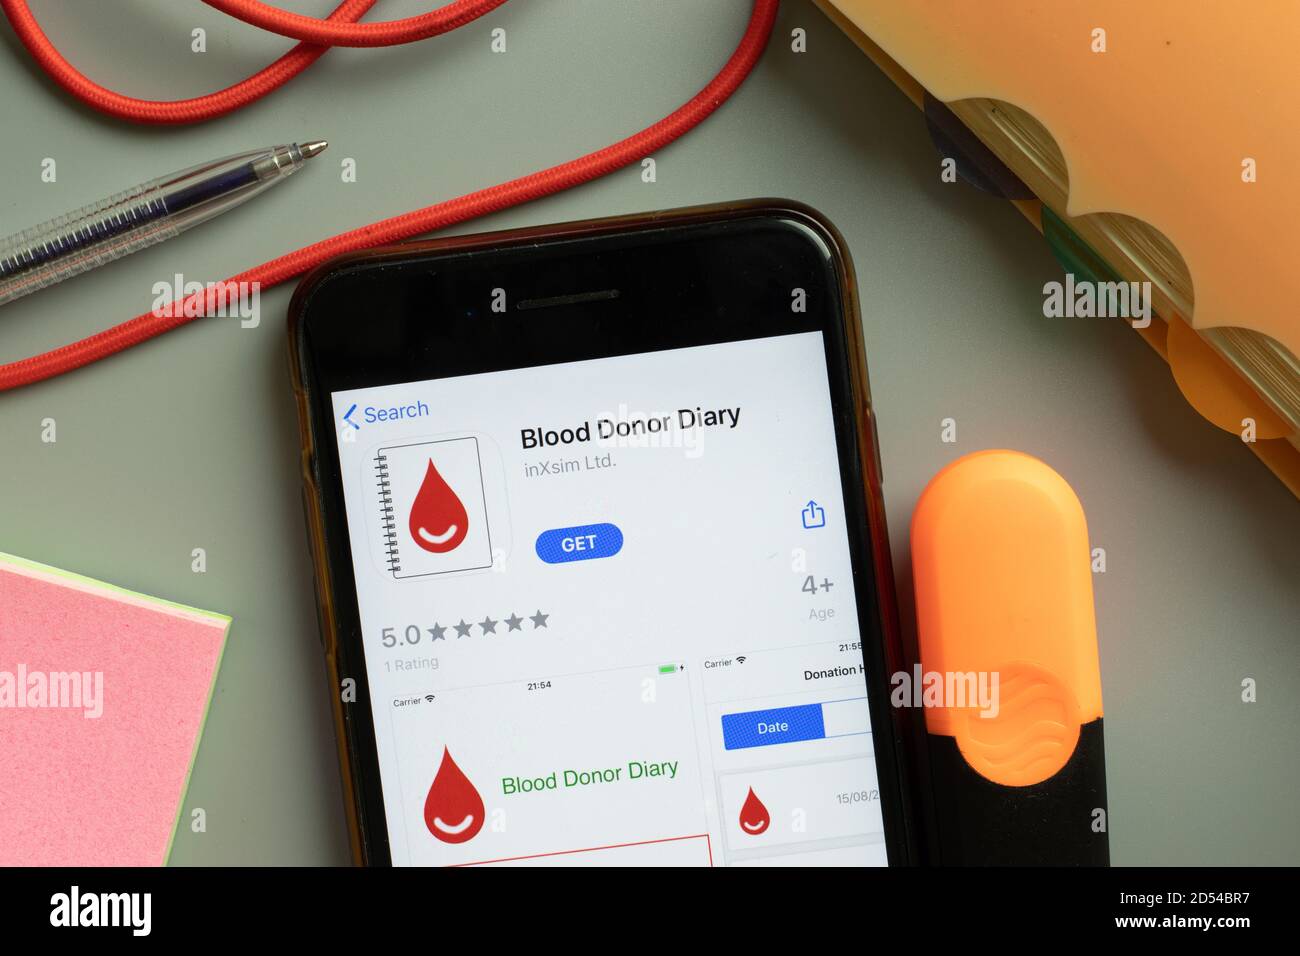 New York, USA - 29 settembre 2020: Logo dell'app mobile Blood Donor Diary sullo schermo del telefono primo piano, editoriale illustrativo Foto Stock